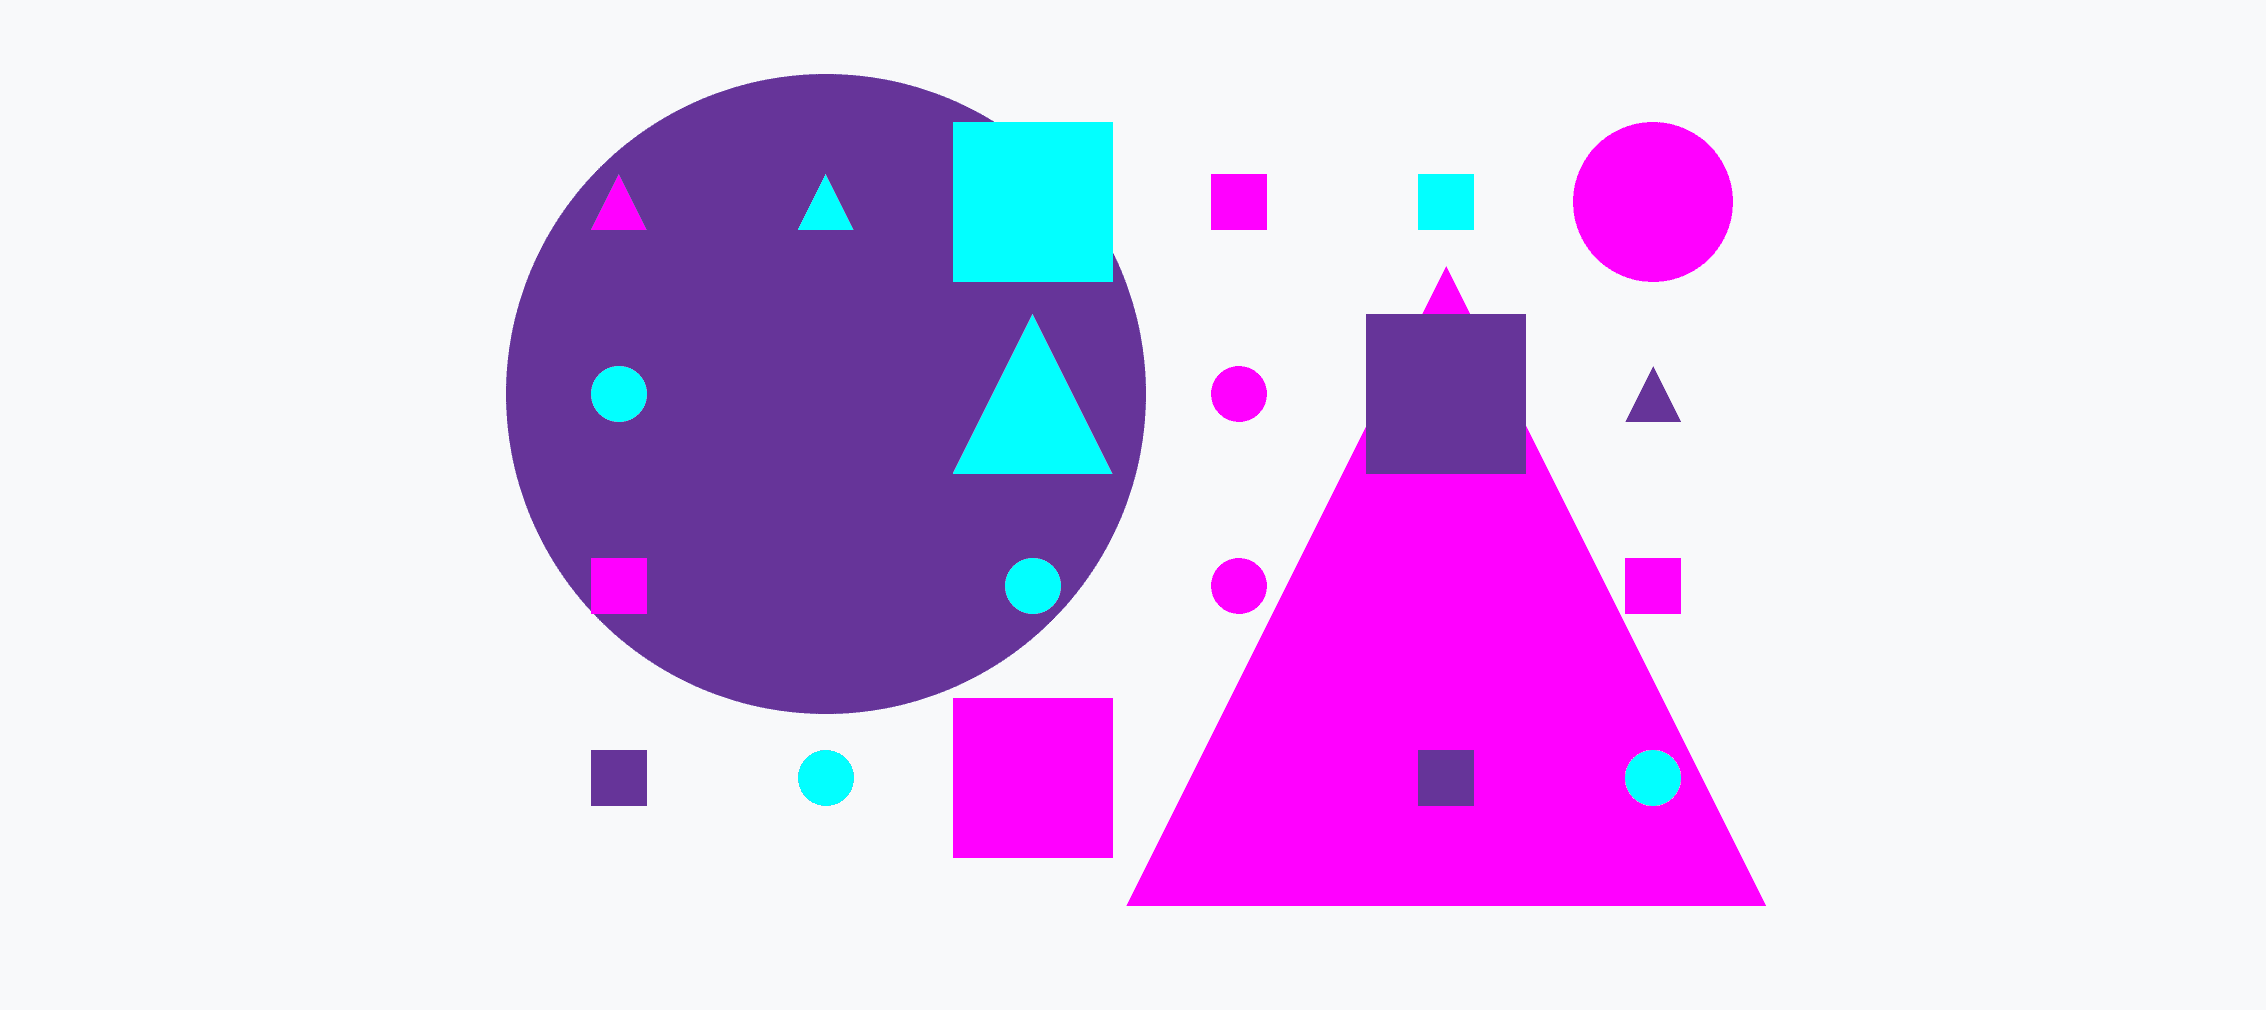 작은 원과 큰 원, 삼각형, 정사각형으로 이루어진 다채로운 그리드